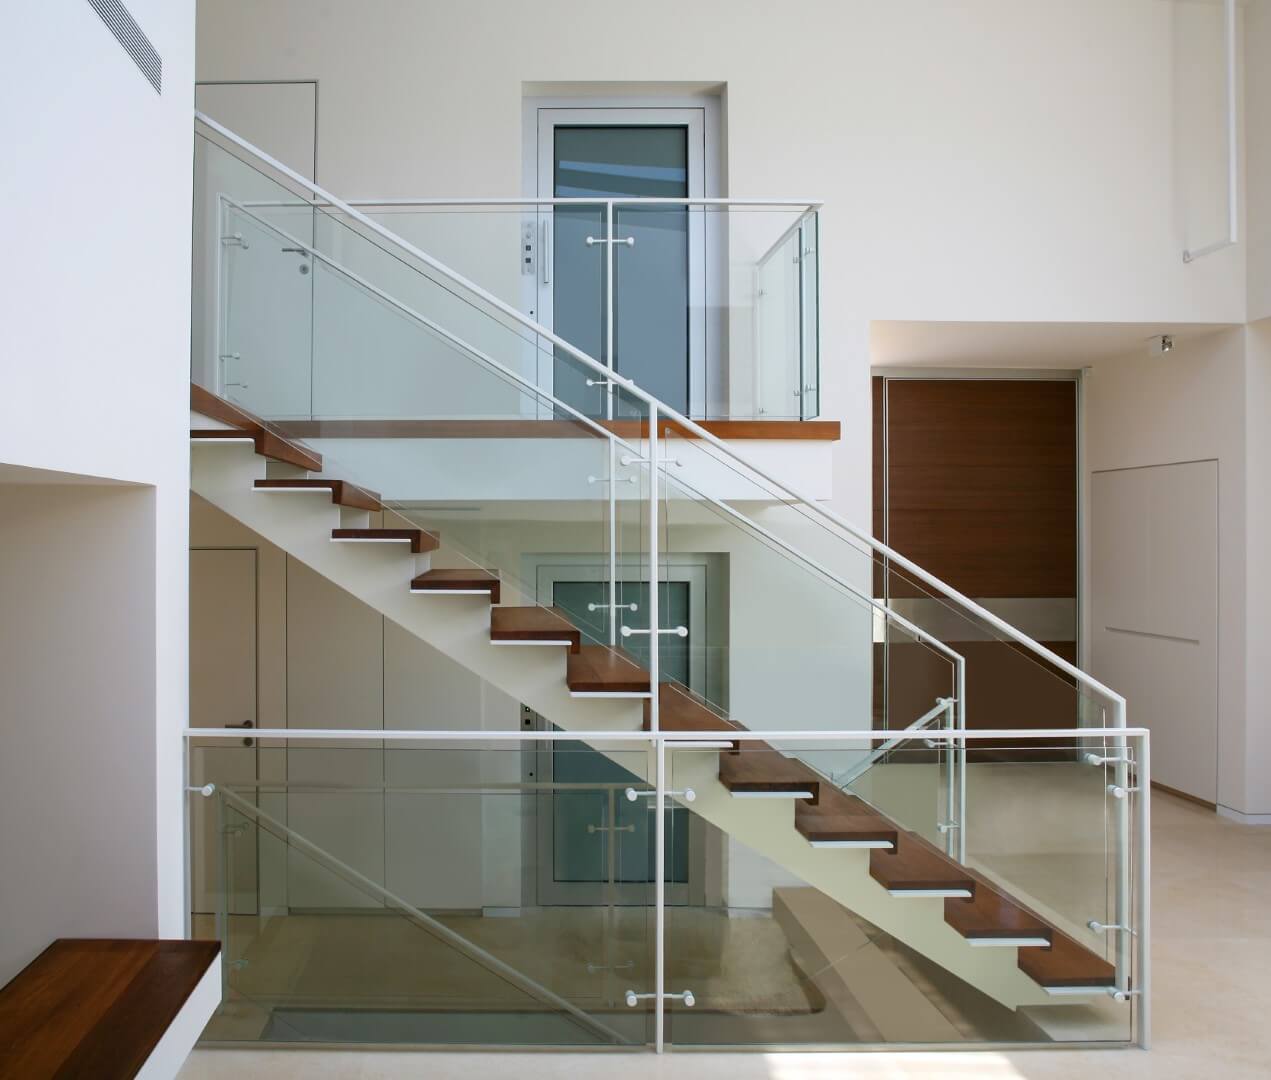 מדרגות קונסטרוקציות ברזל לבן עם מדרכי ברזל ועץ עץ טיק בשילוב של זכוכית שקופה ומאחז יד מברזל